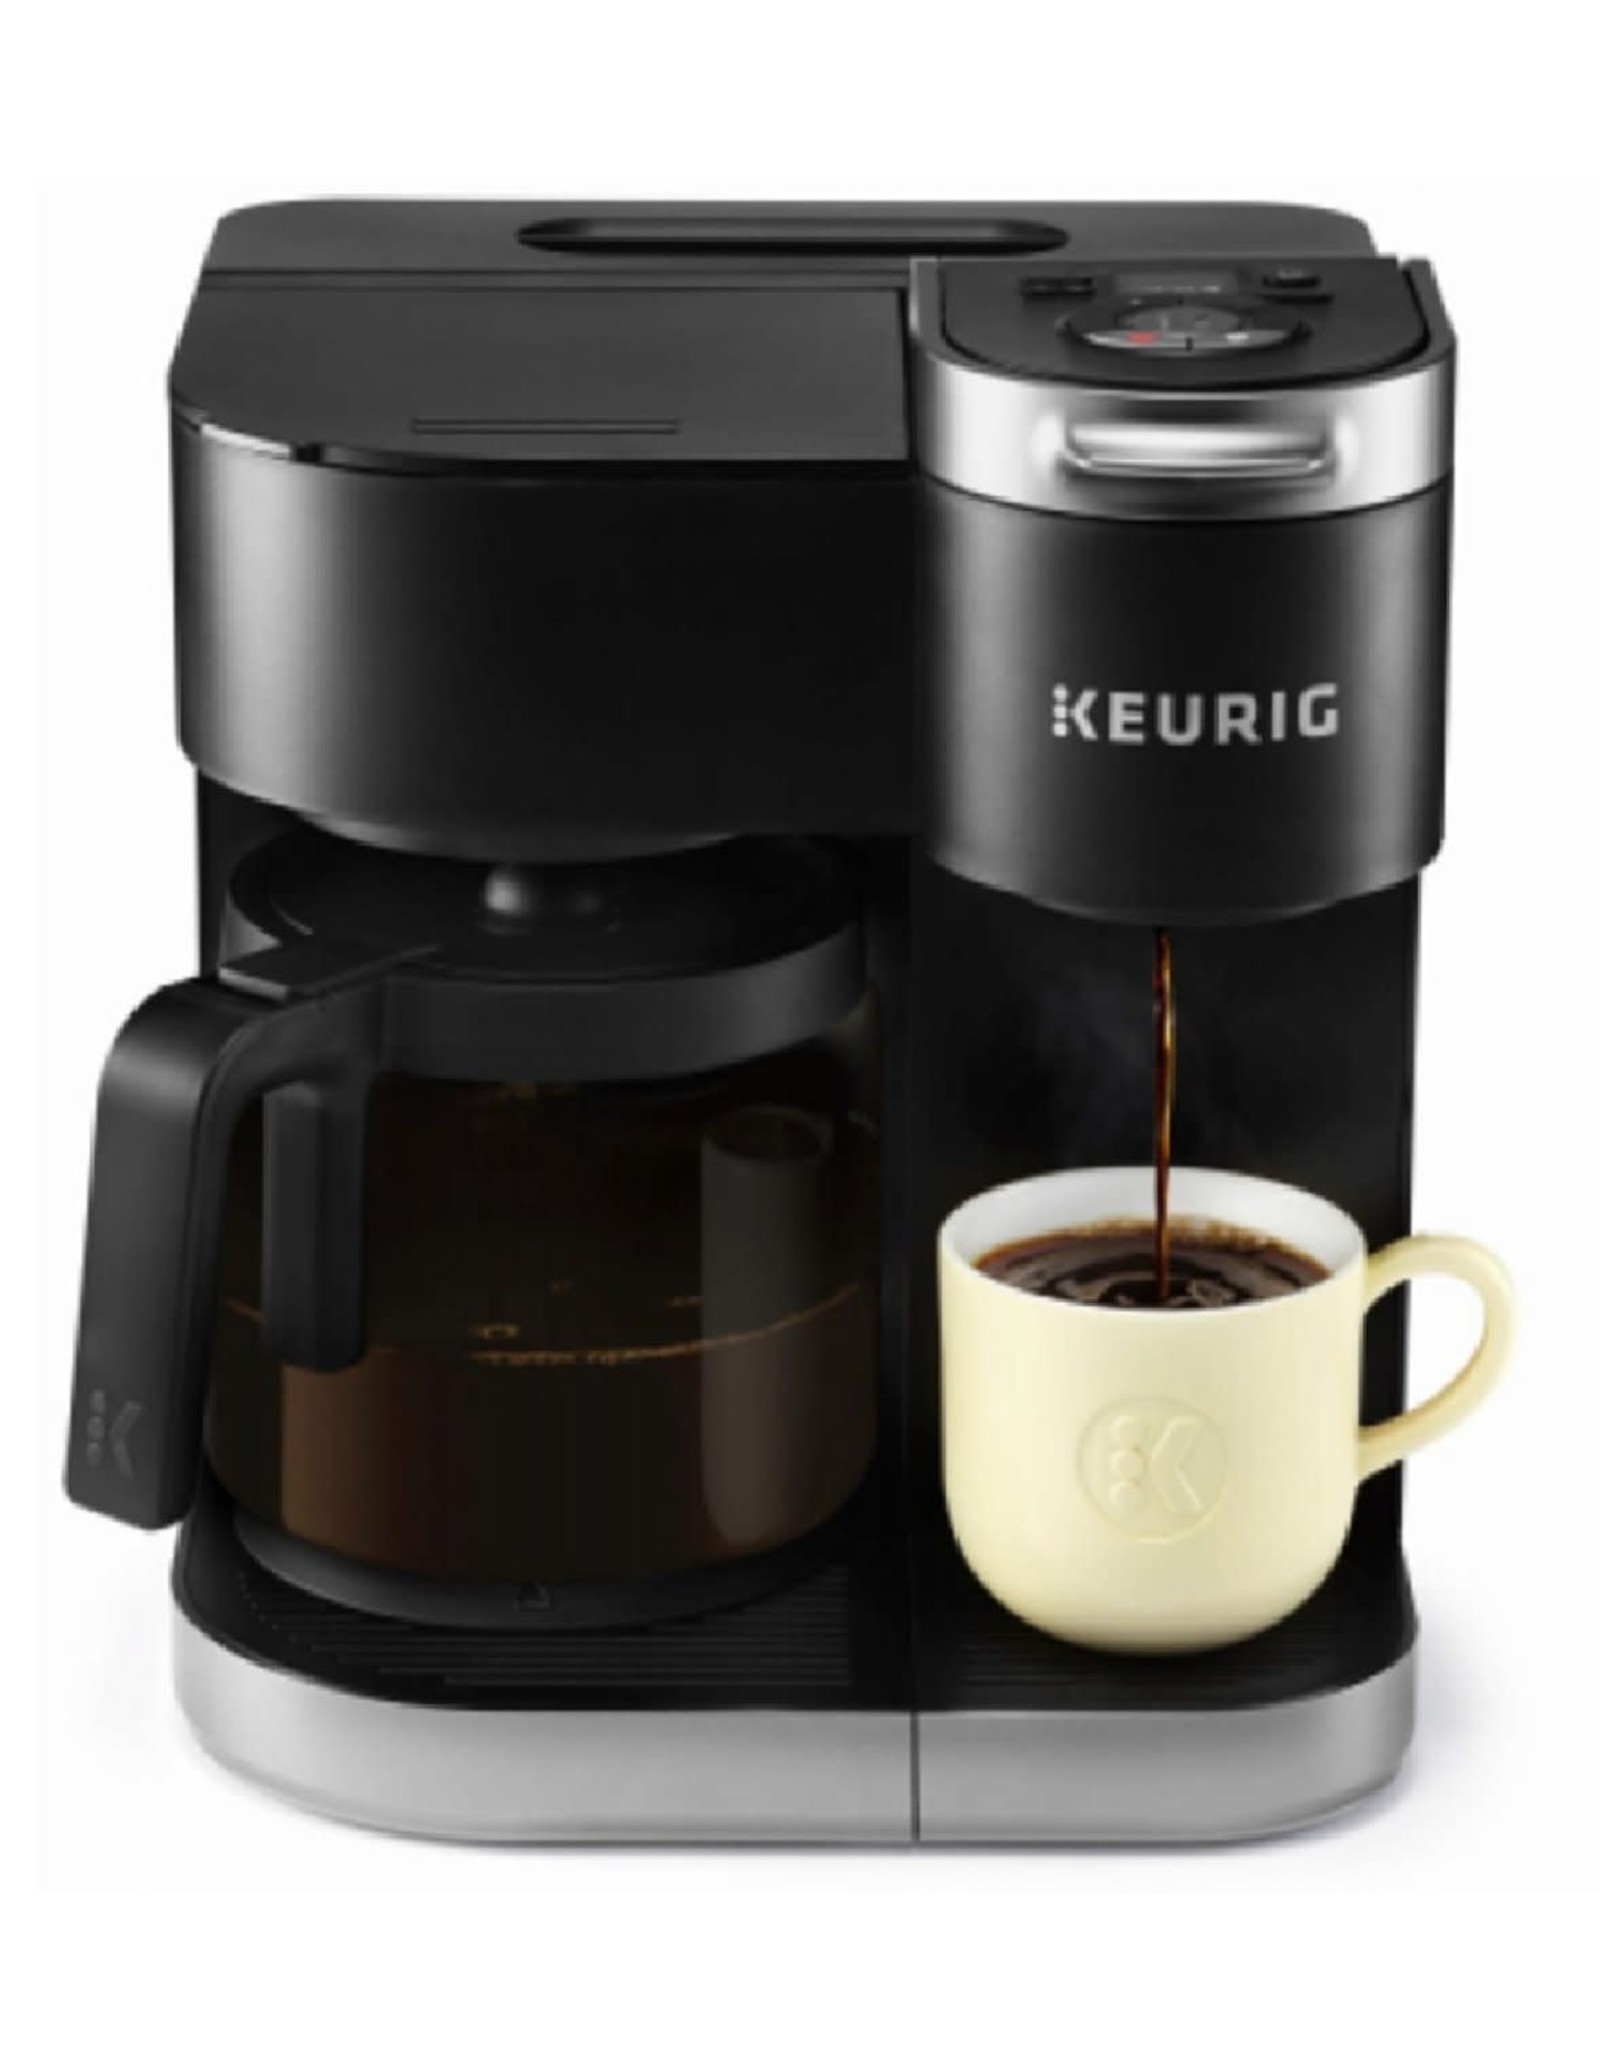 https://cdn.shoplightspeed.com/shops/634268/files/35949576/1600x2048x2/keurig-5000204977-keurig-k-duo-coffee-maker-single.jpg